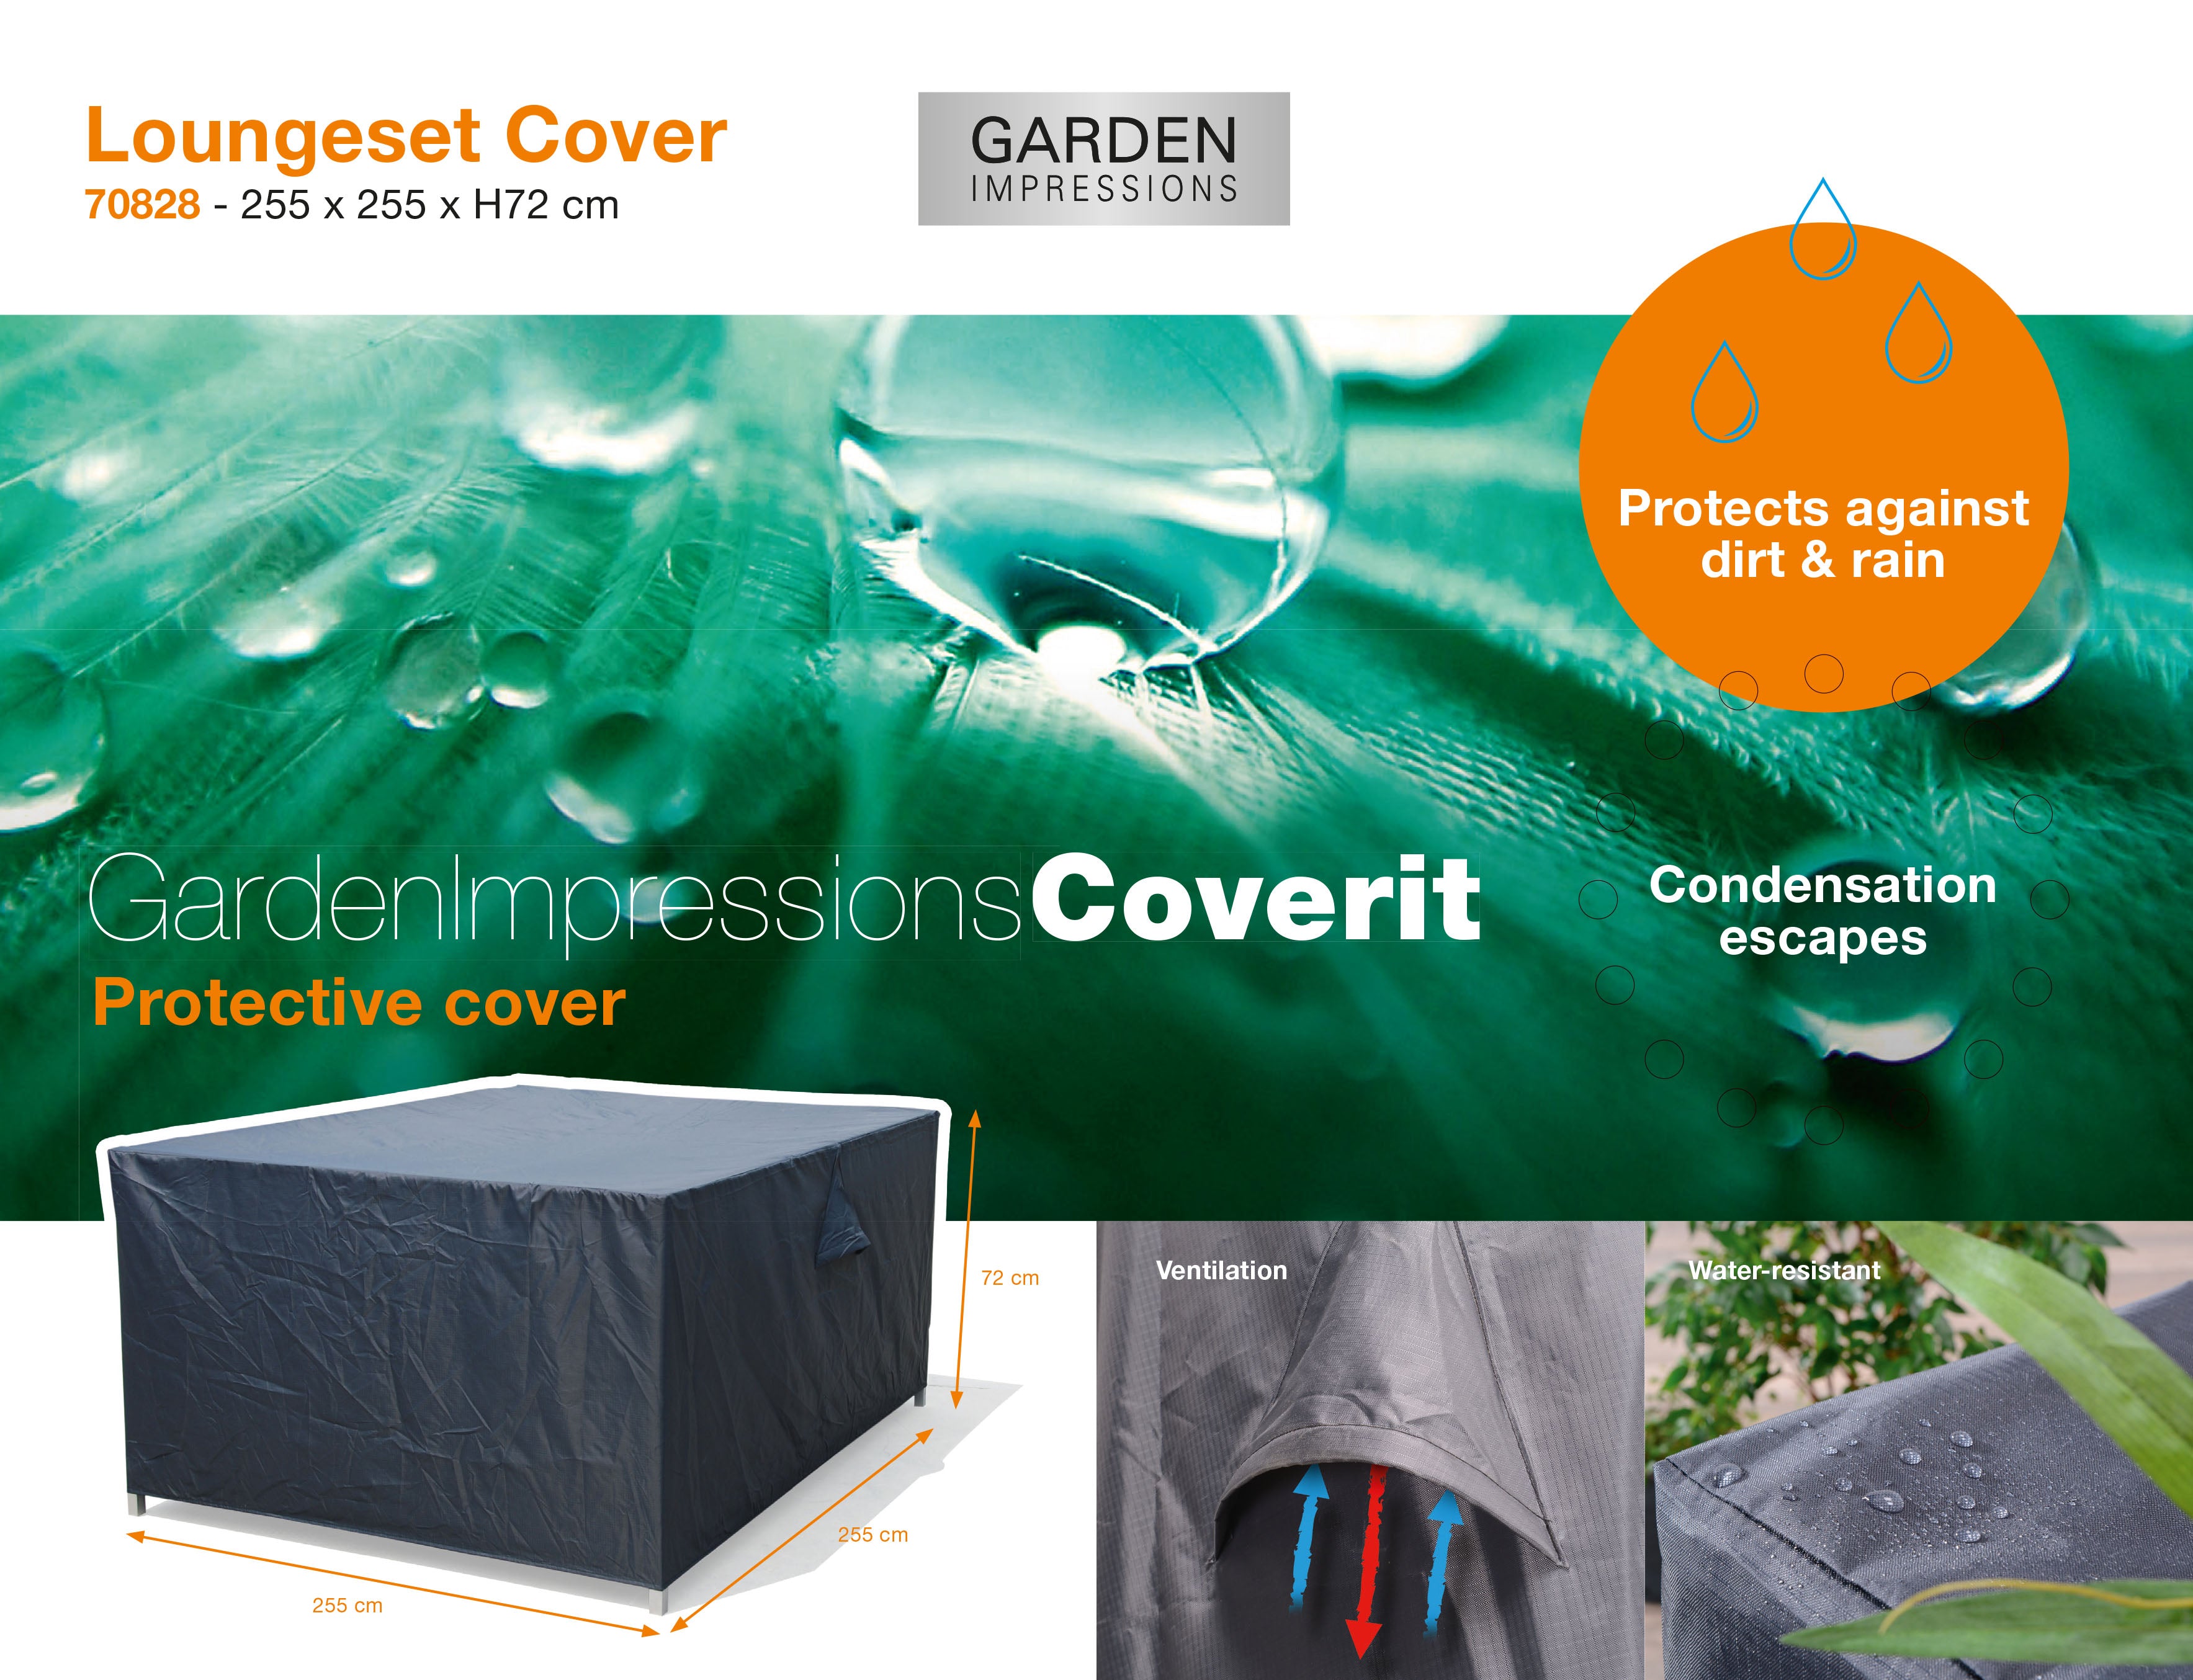 Coverit Lounge Set Cover 255cm x 255cm